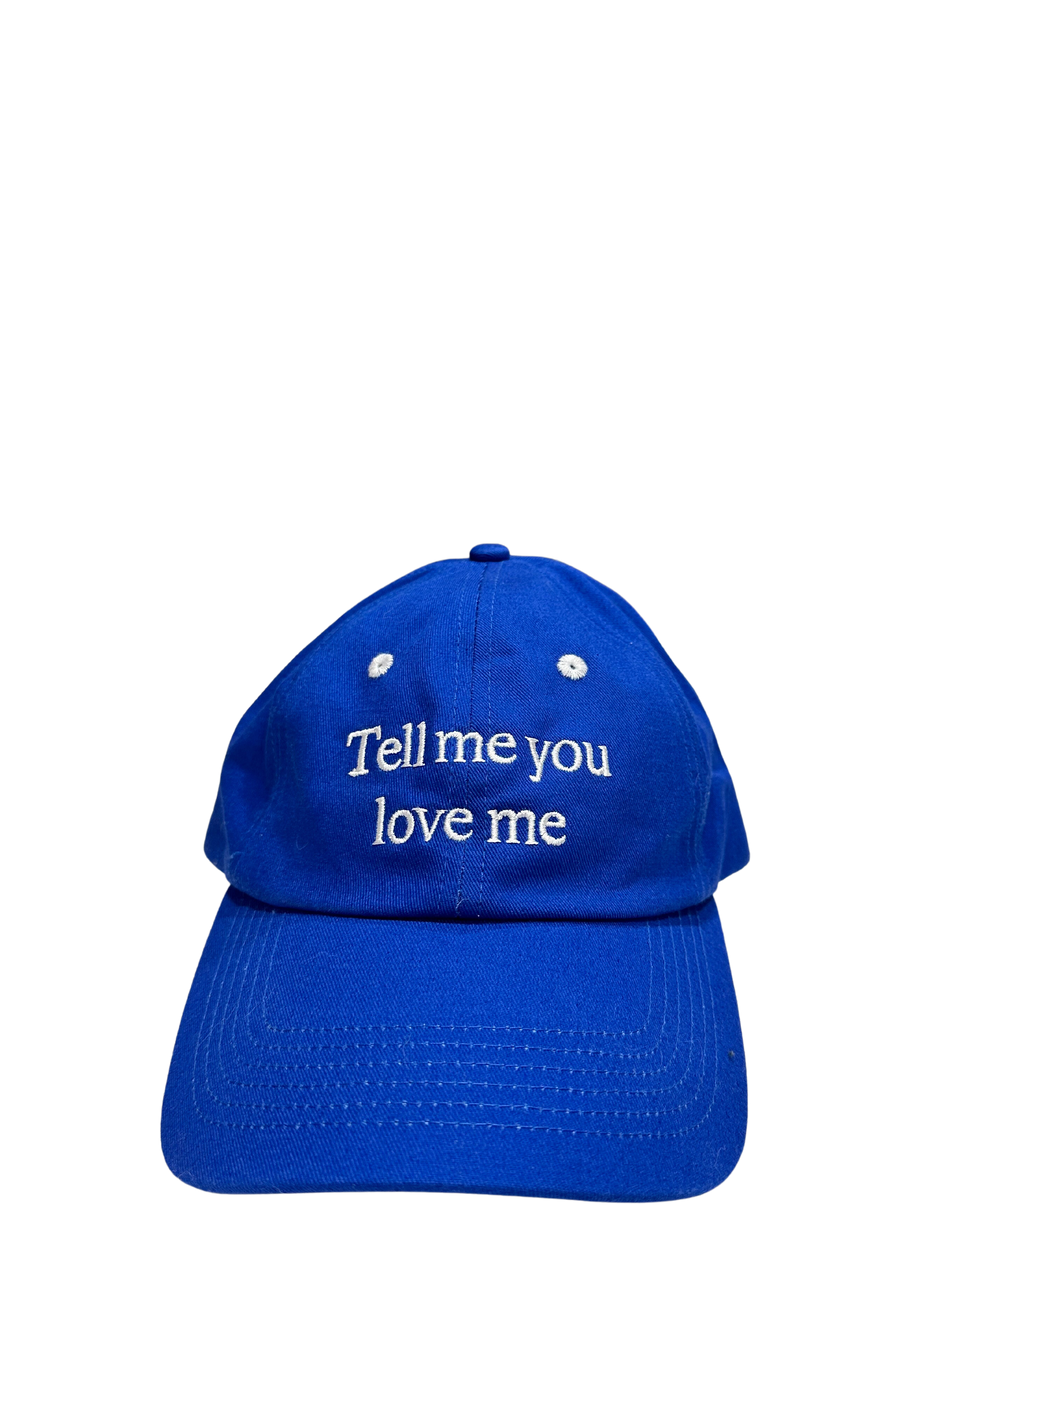 Tell me you love me cap